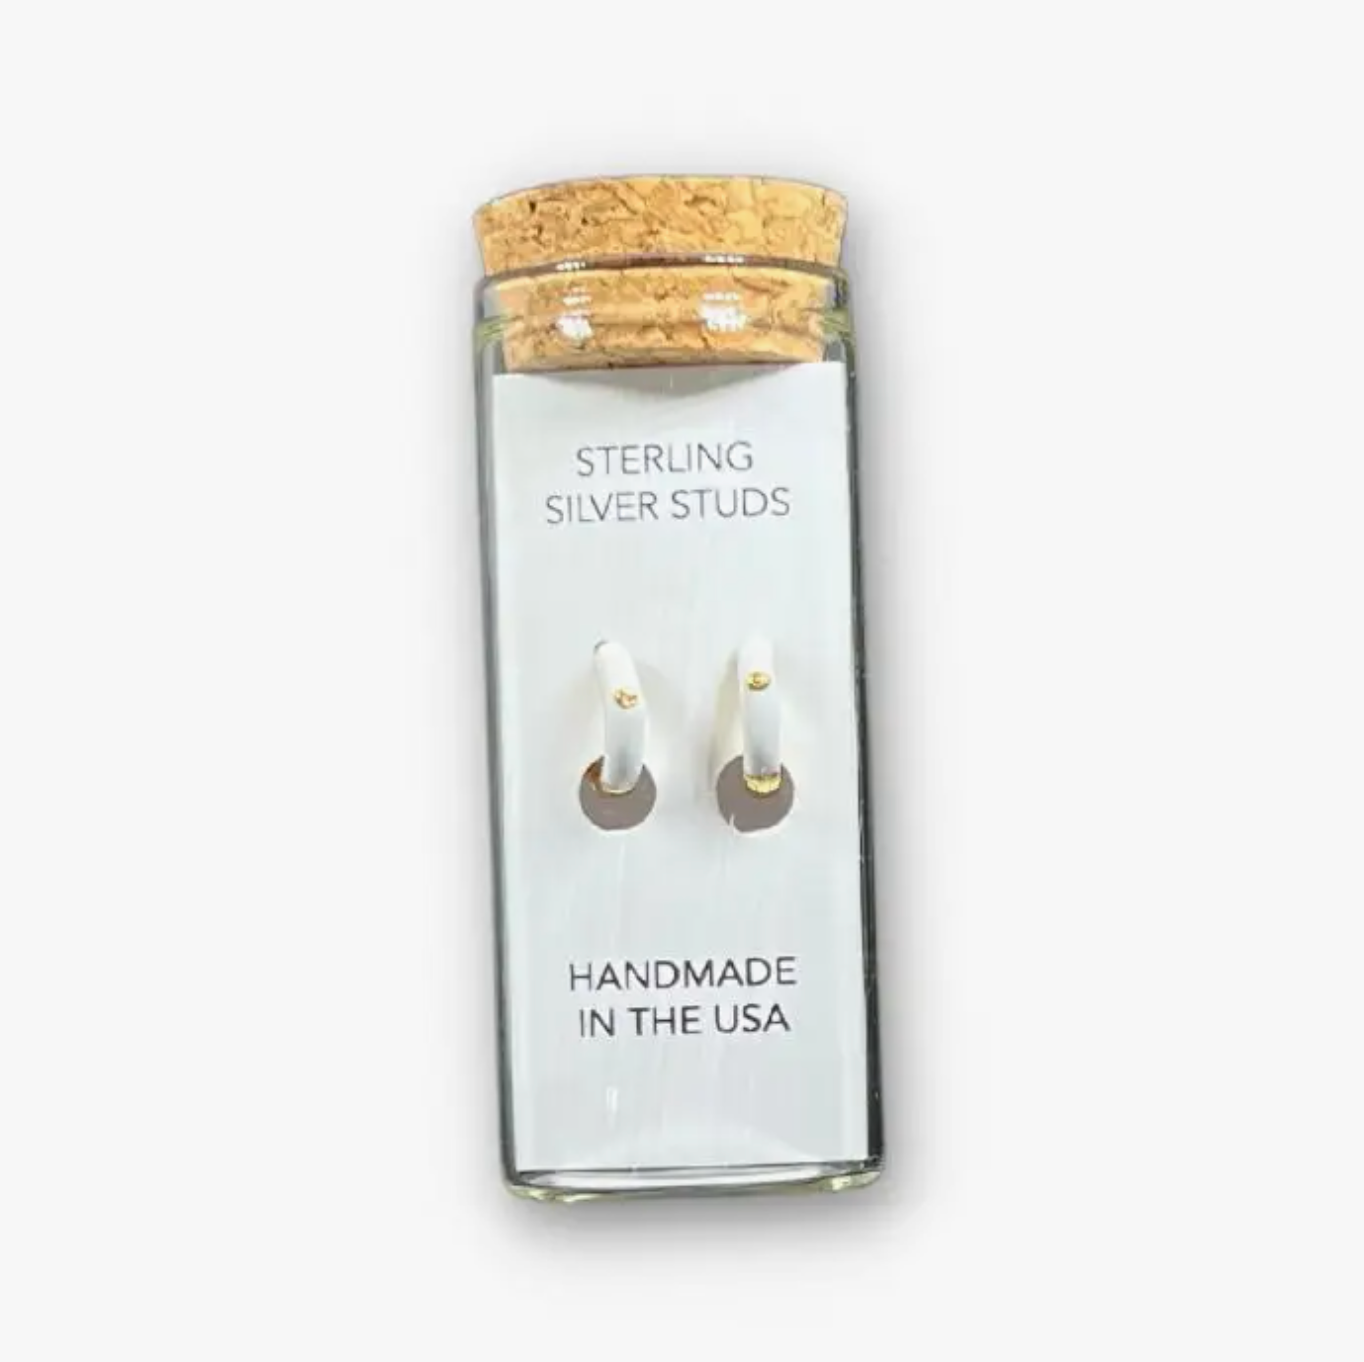 Sterling Silver Hoop Earrings in a Bottle - Small Hoop